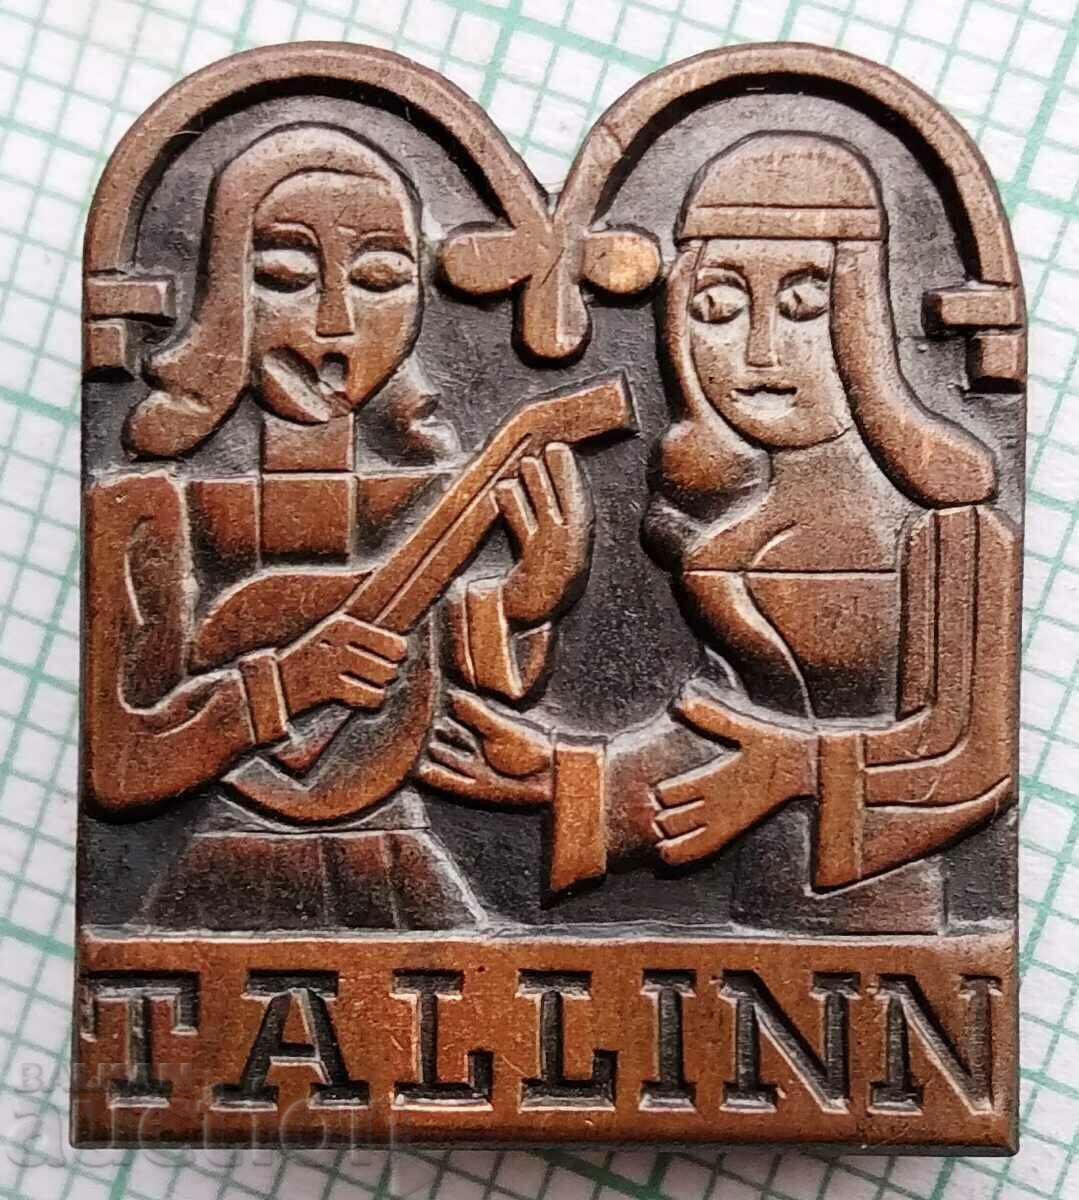 13038 Insigna - Tallinn Estonia